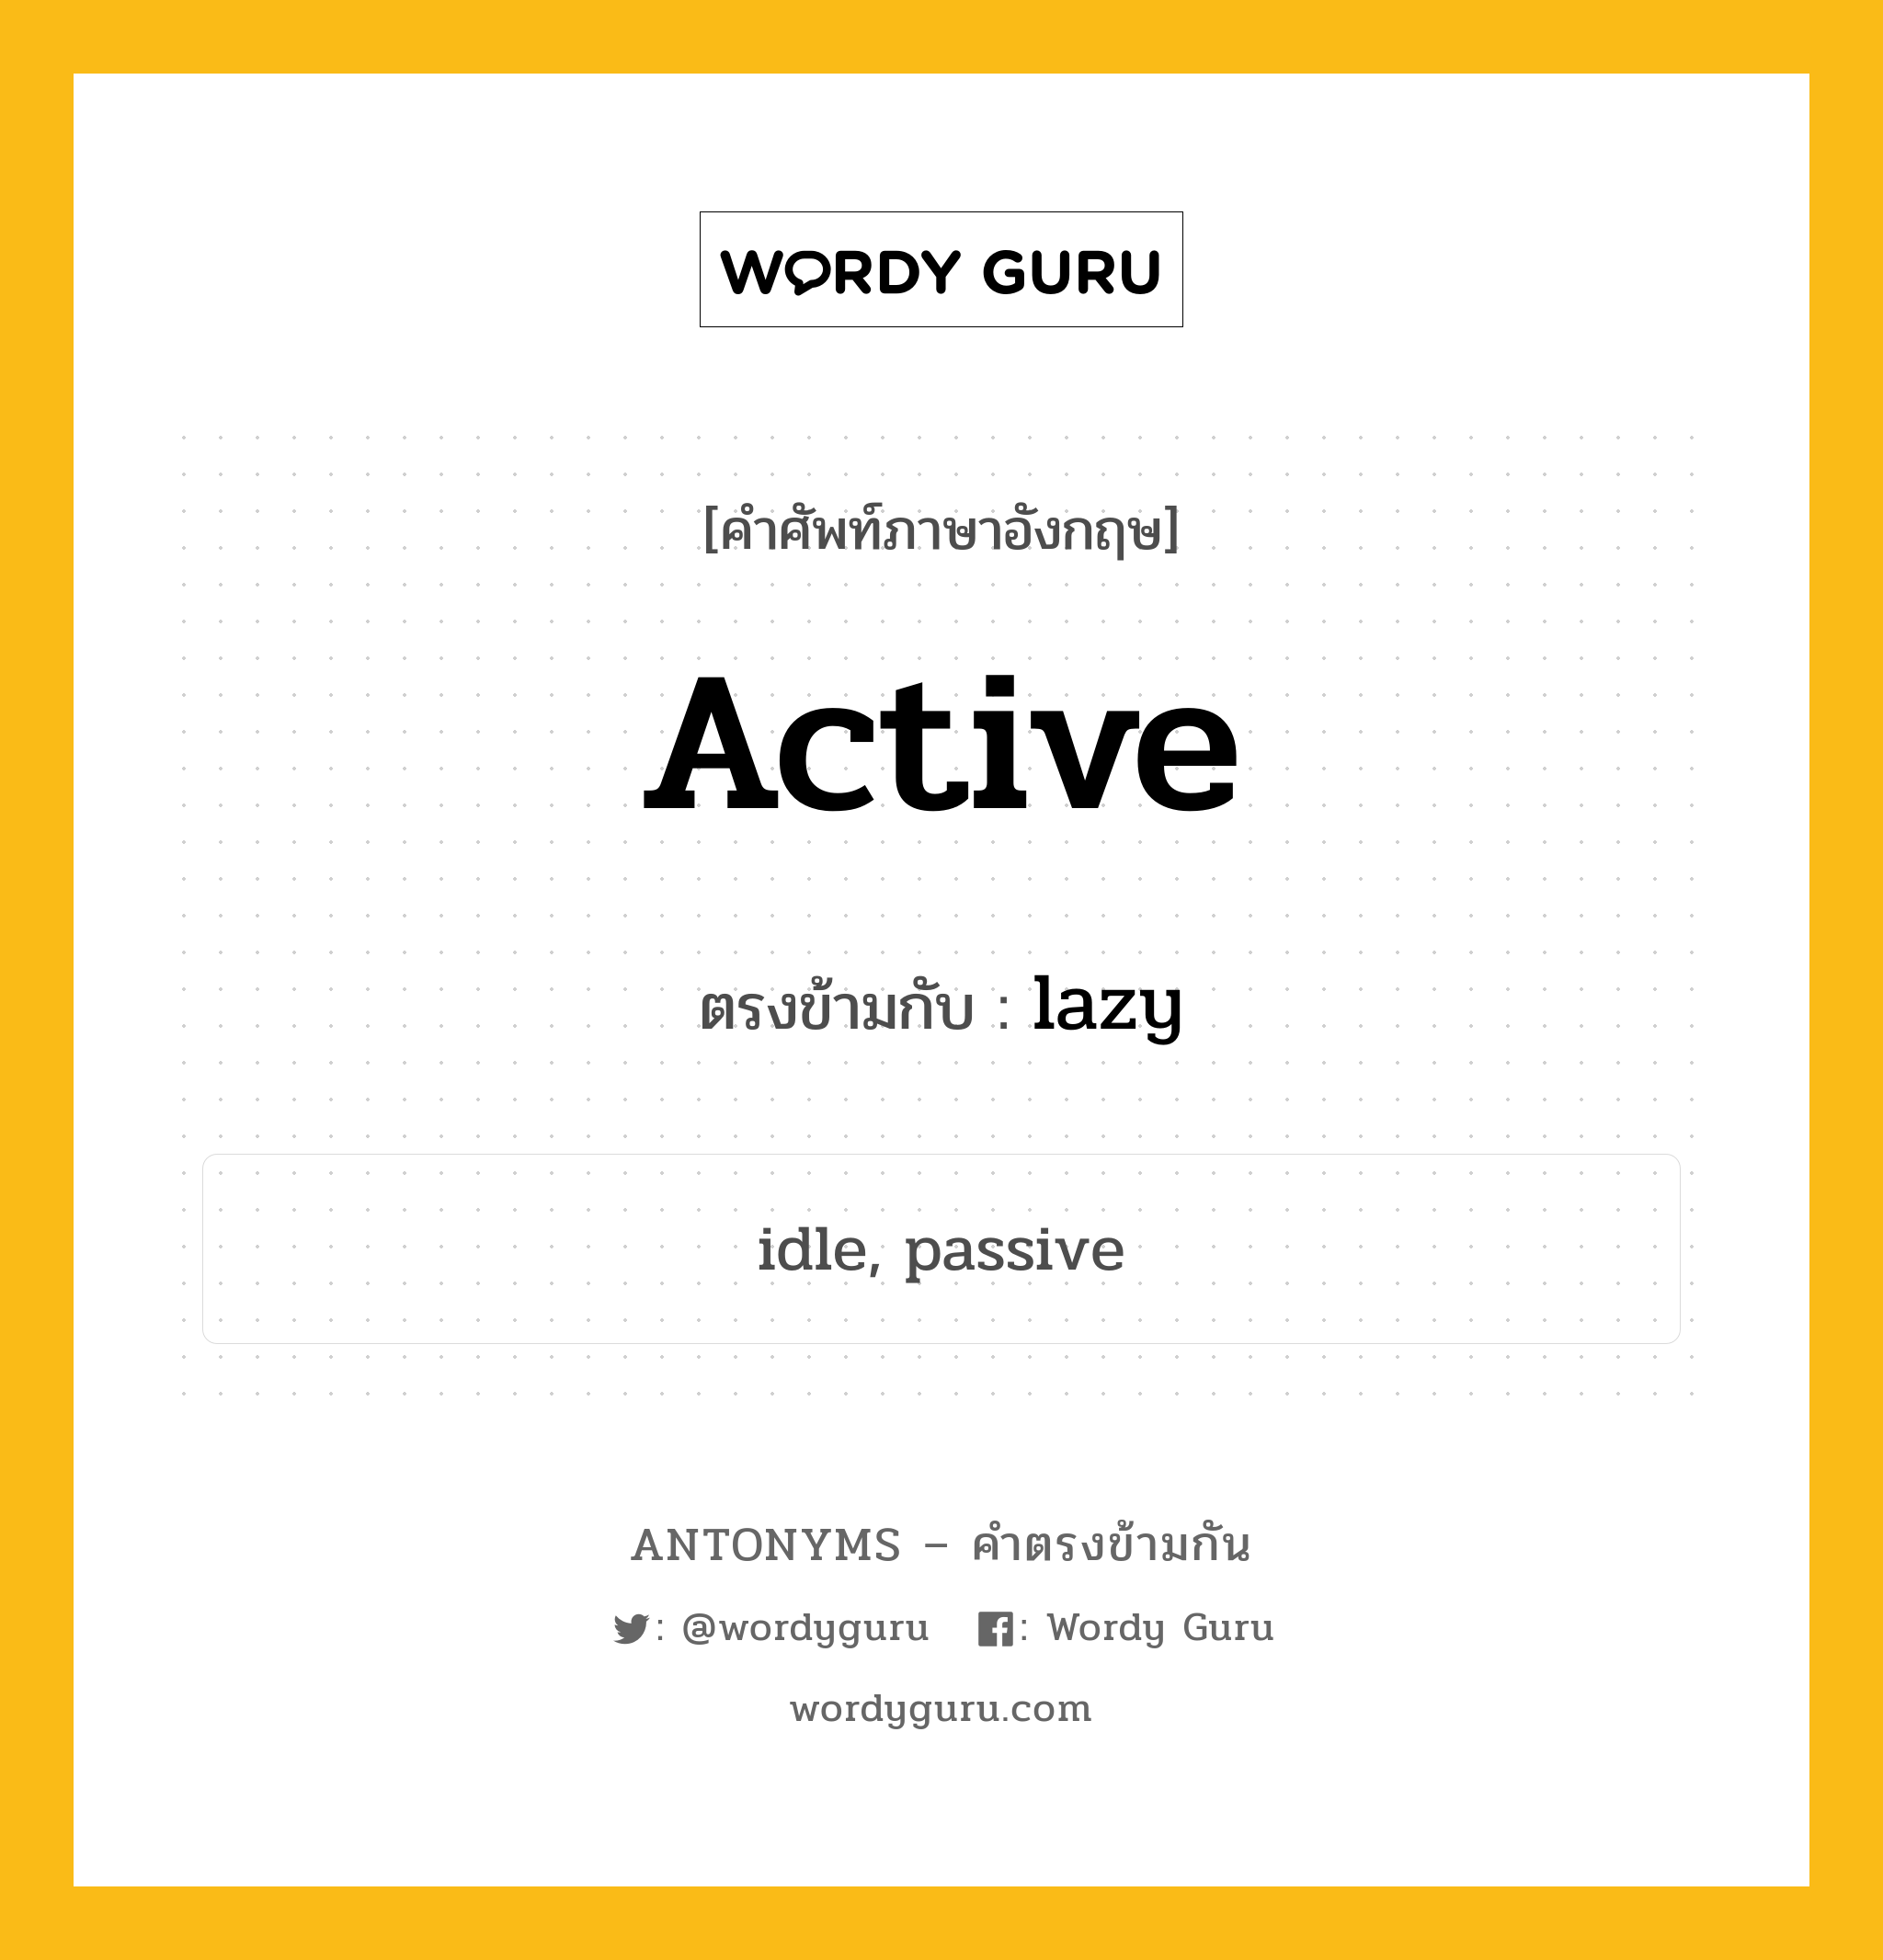 active เป็นคำตรงข้ามกับคำไหนบ้าง?, คำศัพท์ภาษาอังกฤษ active ตรงข้ามกับ lazy หมวด lazy